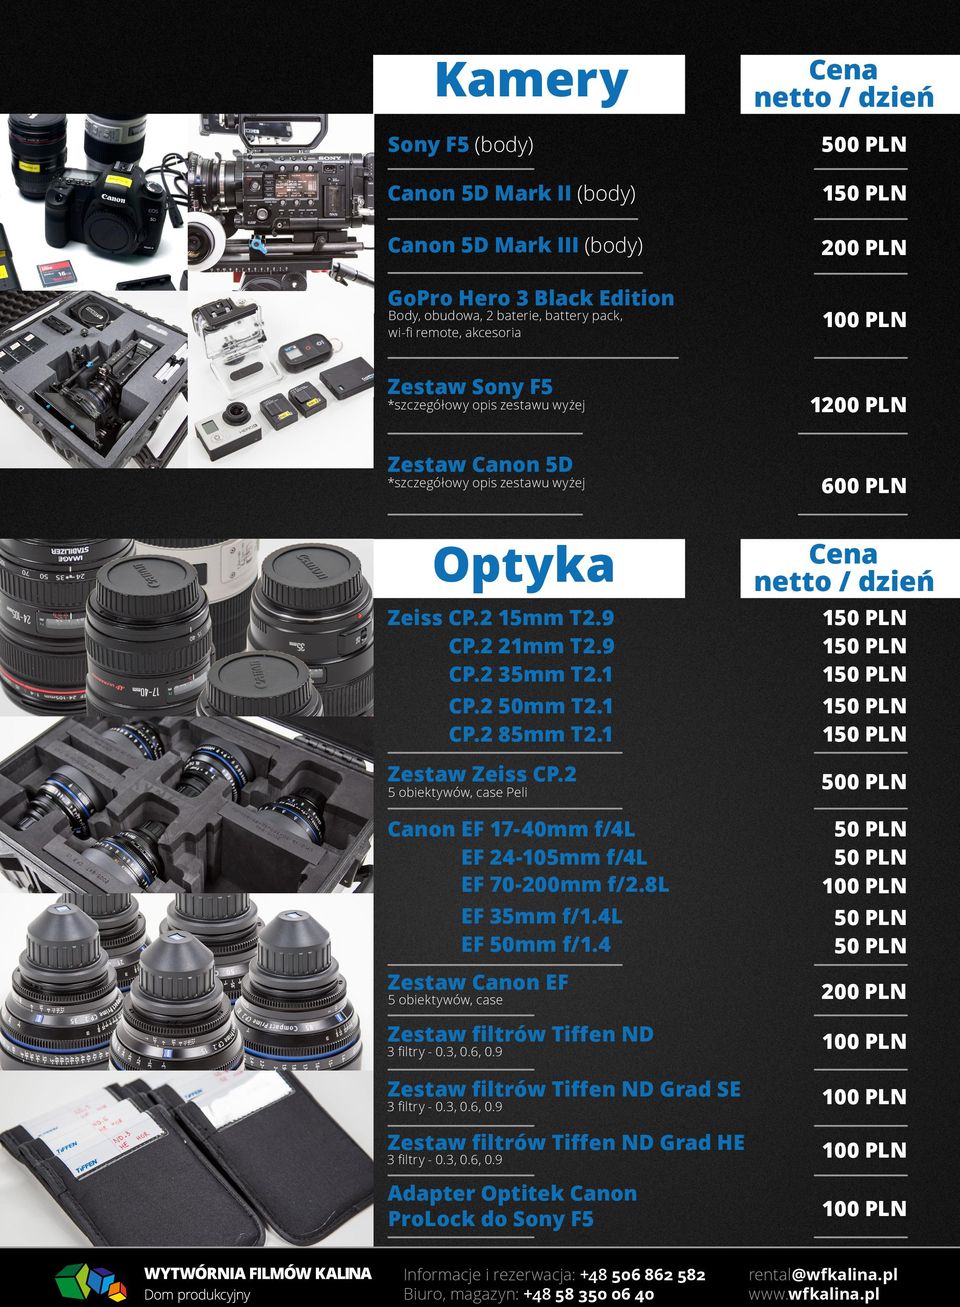 1 Zestaw Zeiss CP.2 5 obiektywów, case Peli 500 PLN Canon EF 17-40mm f/4l EF 24-105mm f/4l EF 70-200mm f/2.8l EF 35mm f/1.4l EF 50mm f/1.